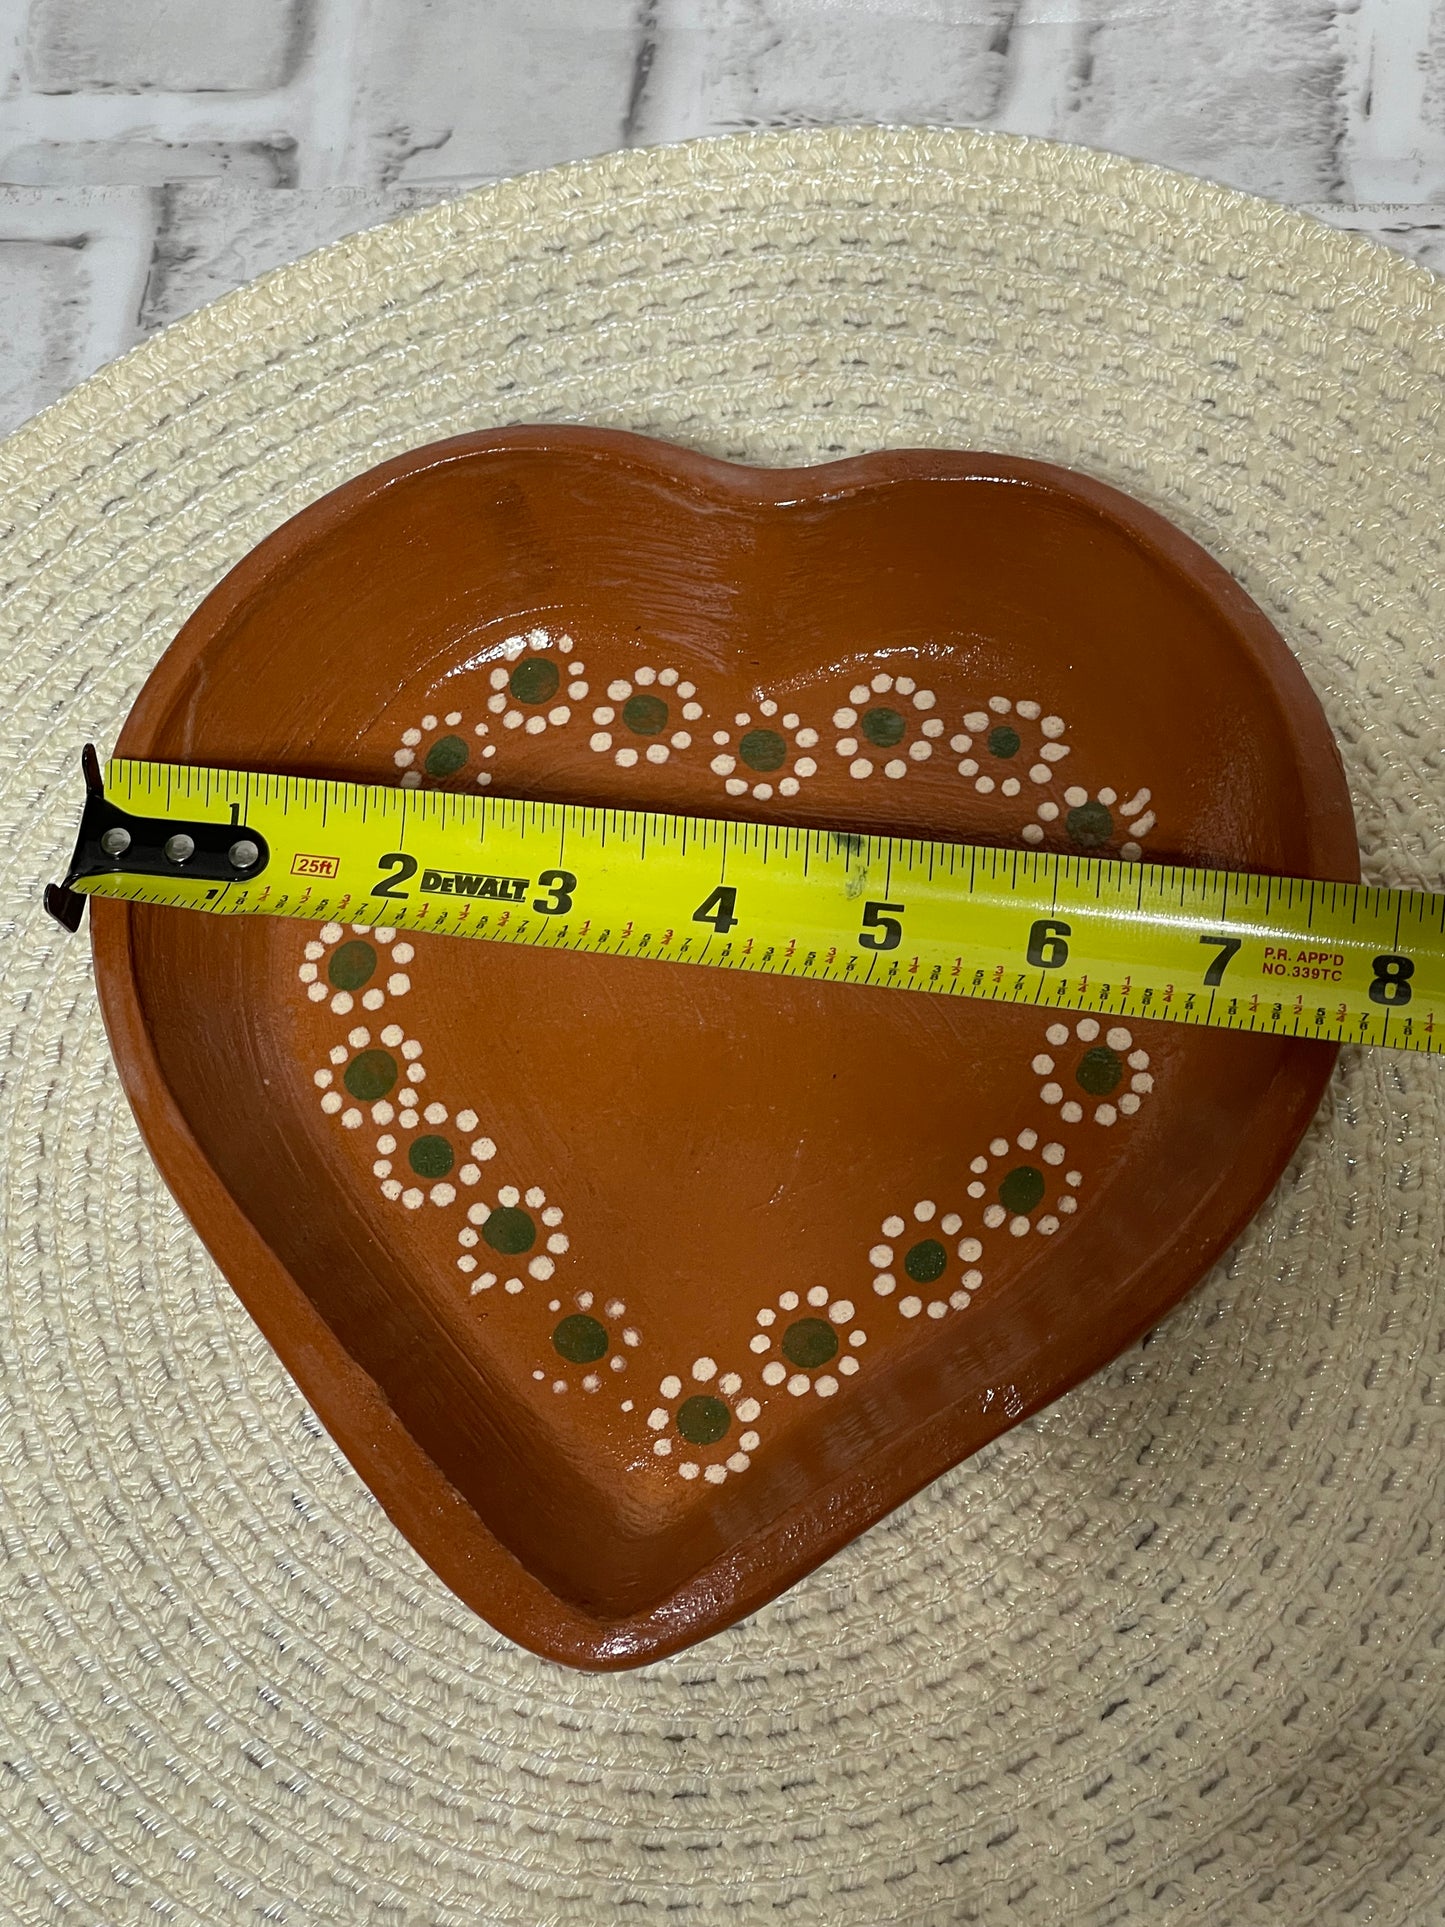 2pc-Plato corazon de barro/terracota heart shape plate